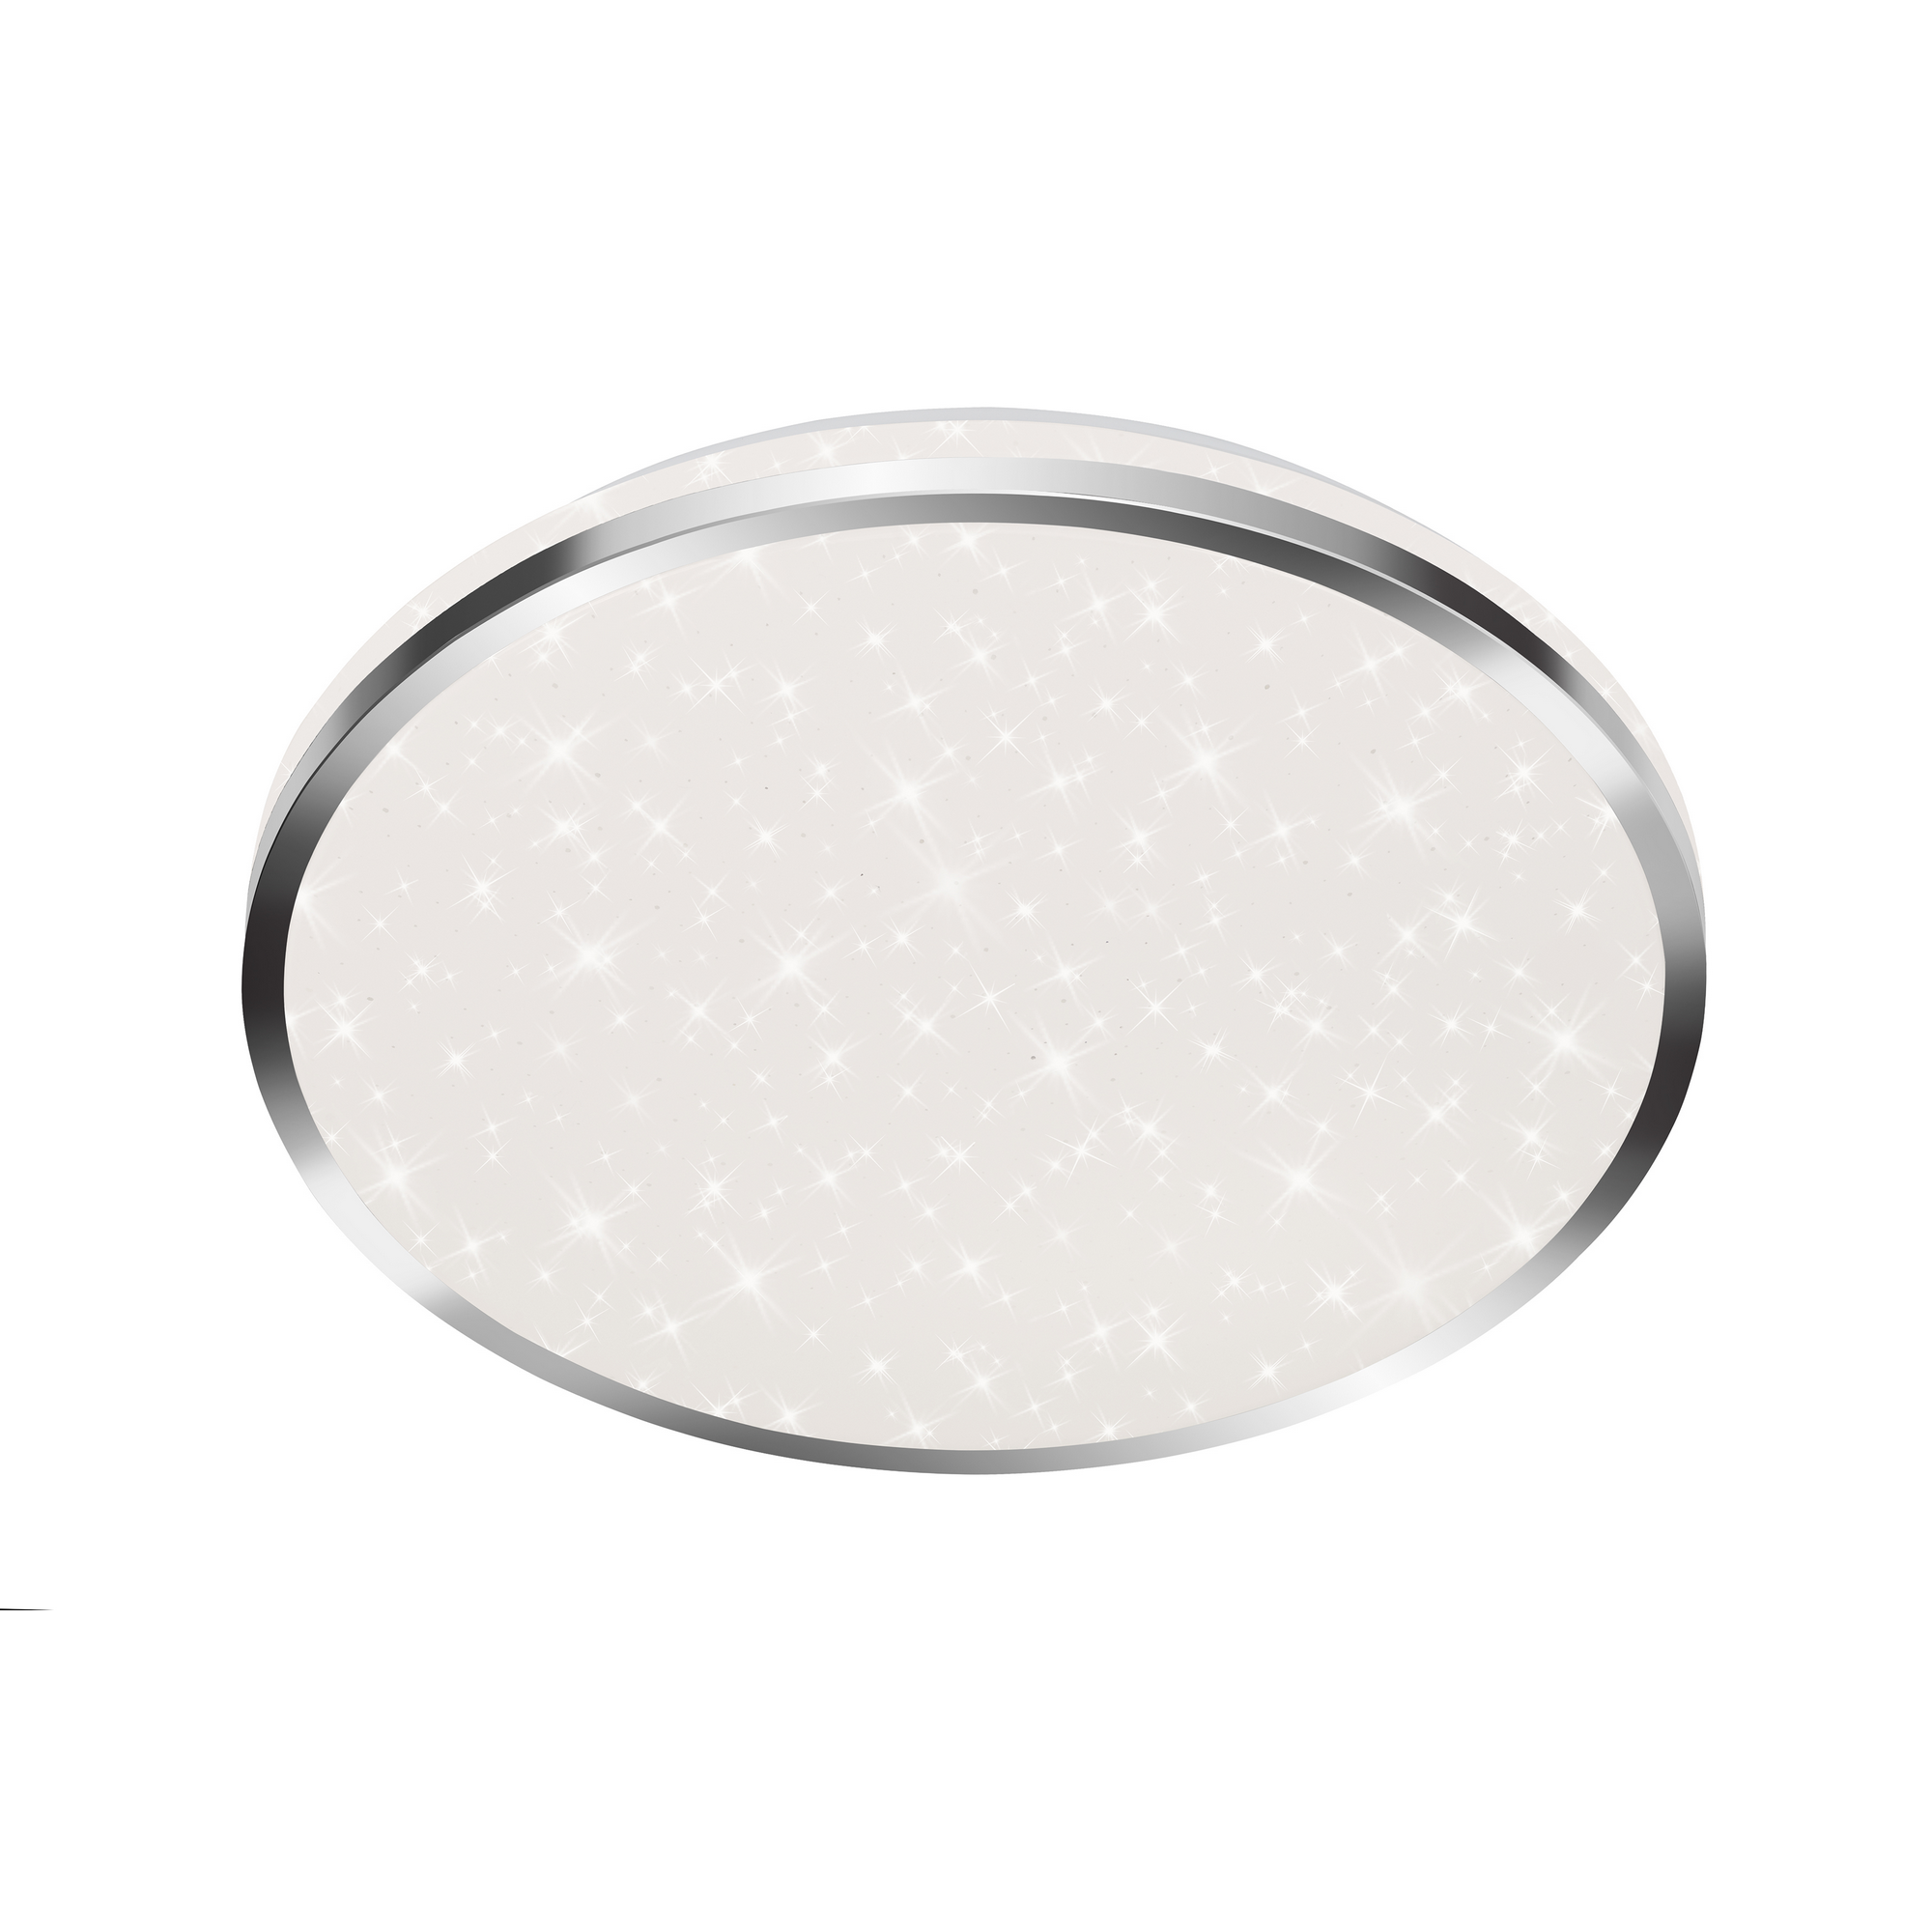 LED-Deckenleuchte 'Acorus' chromfarben/weiß Ø 33 x 6,6 cm 1800 lm, Sternenhimmeleffekt + product picture